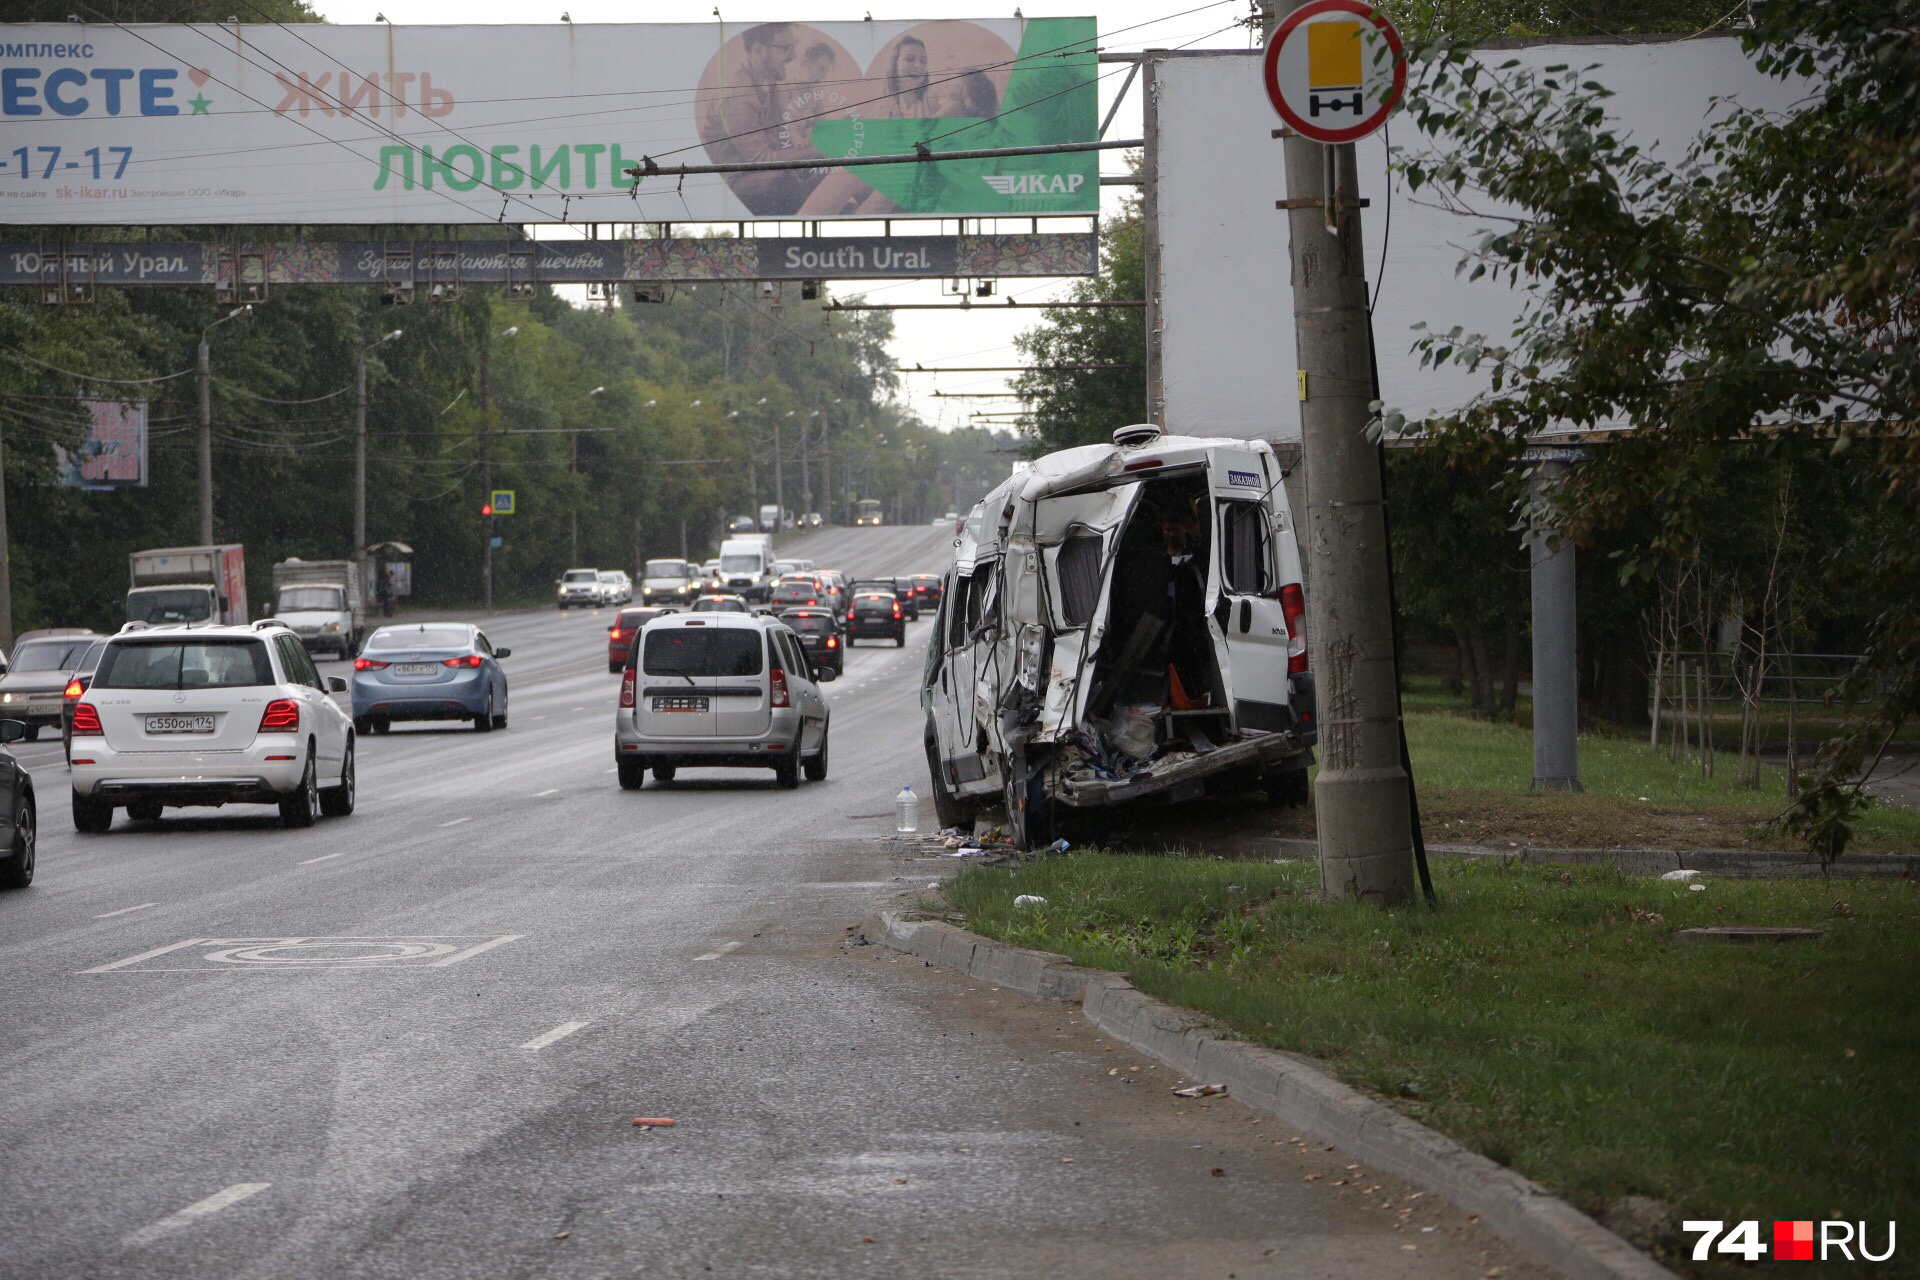 Авария произошла на улице Блюхера. В результате микроавтобус превратился в груду металла